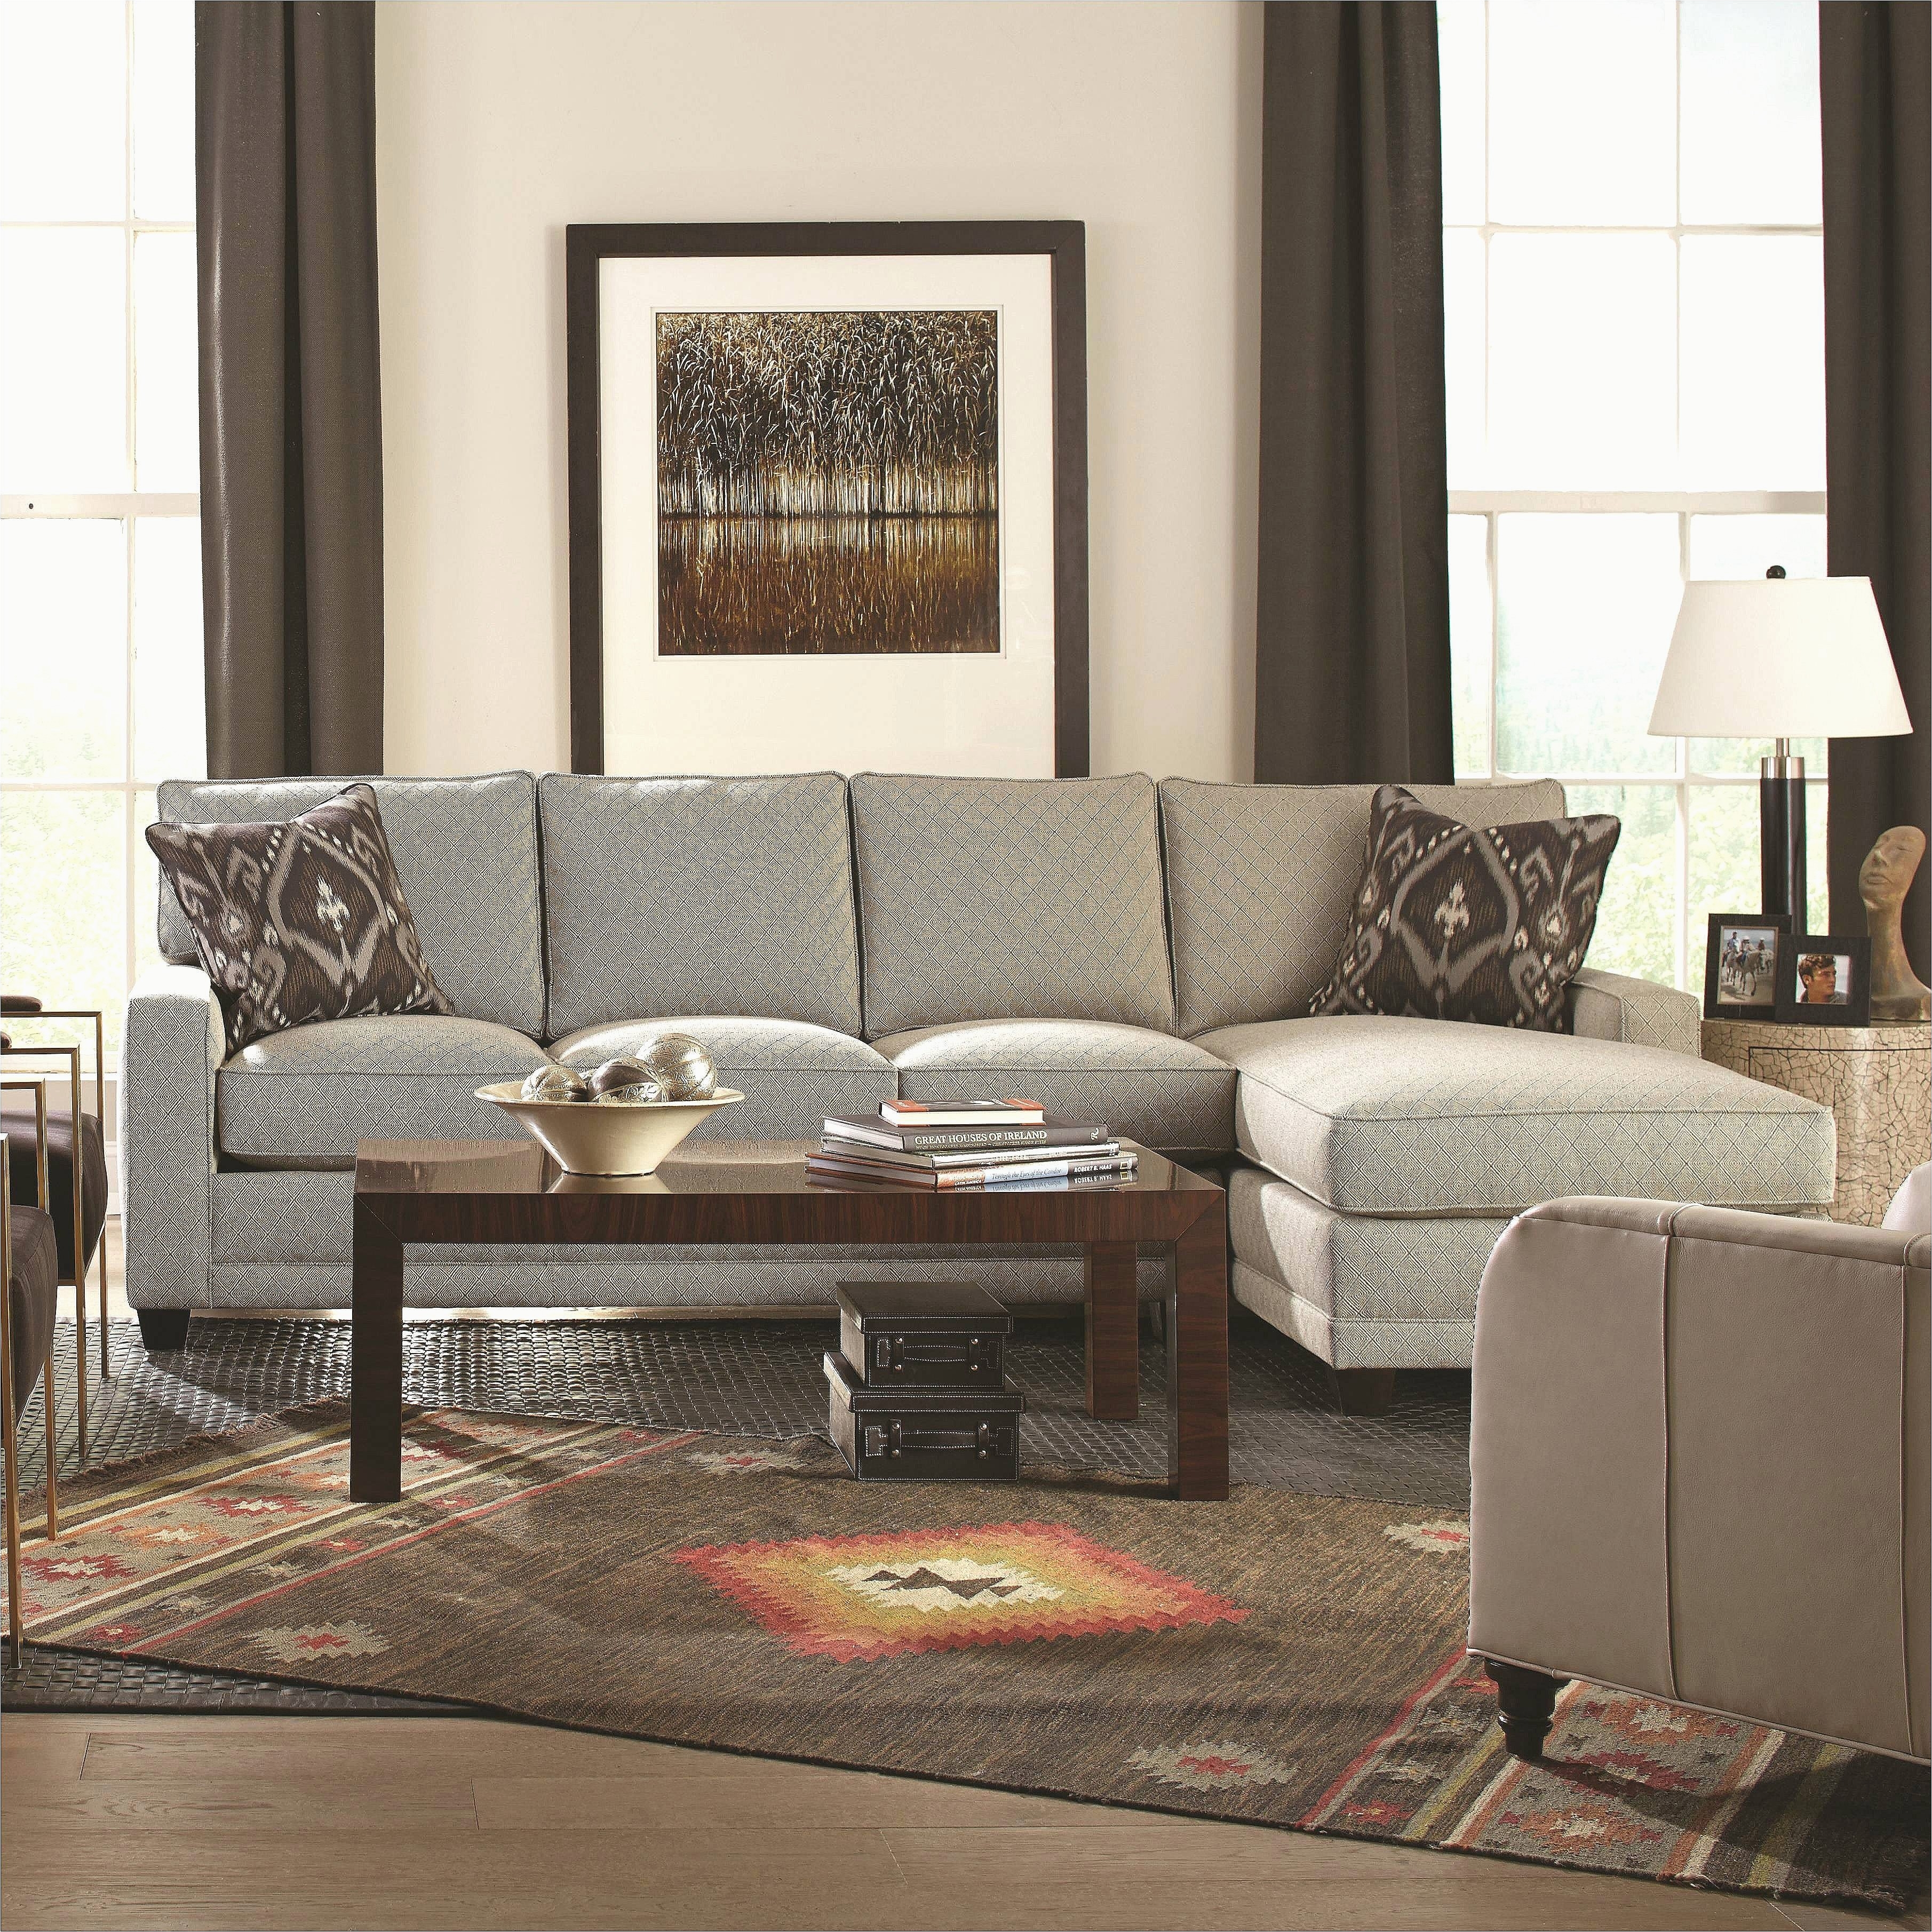 formal living room furniture best modern living room furniture new gunstige sofa macys furniture 0d